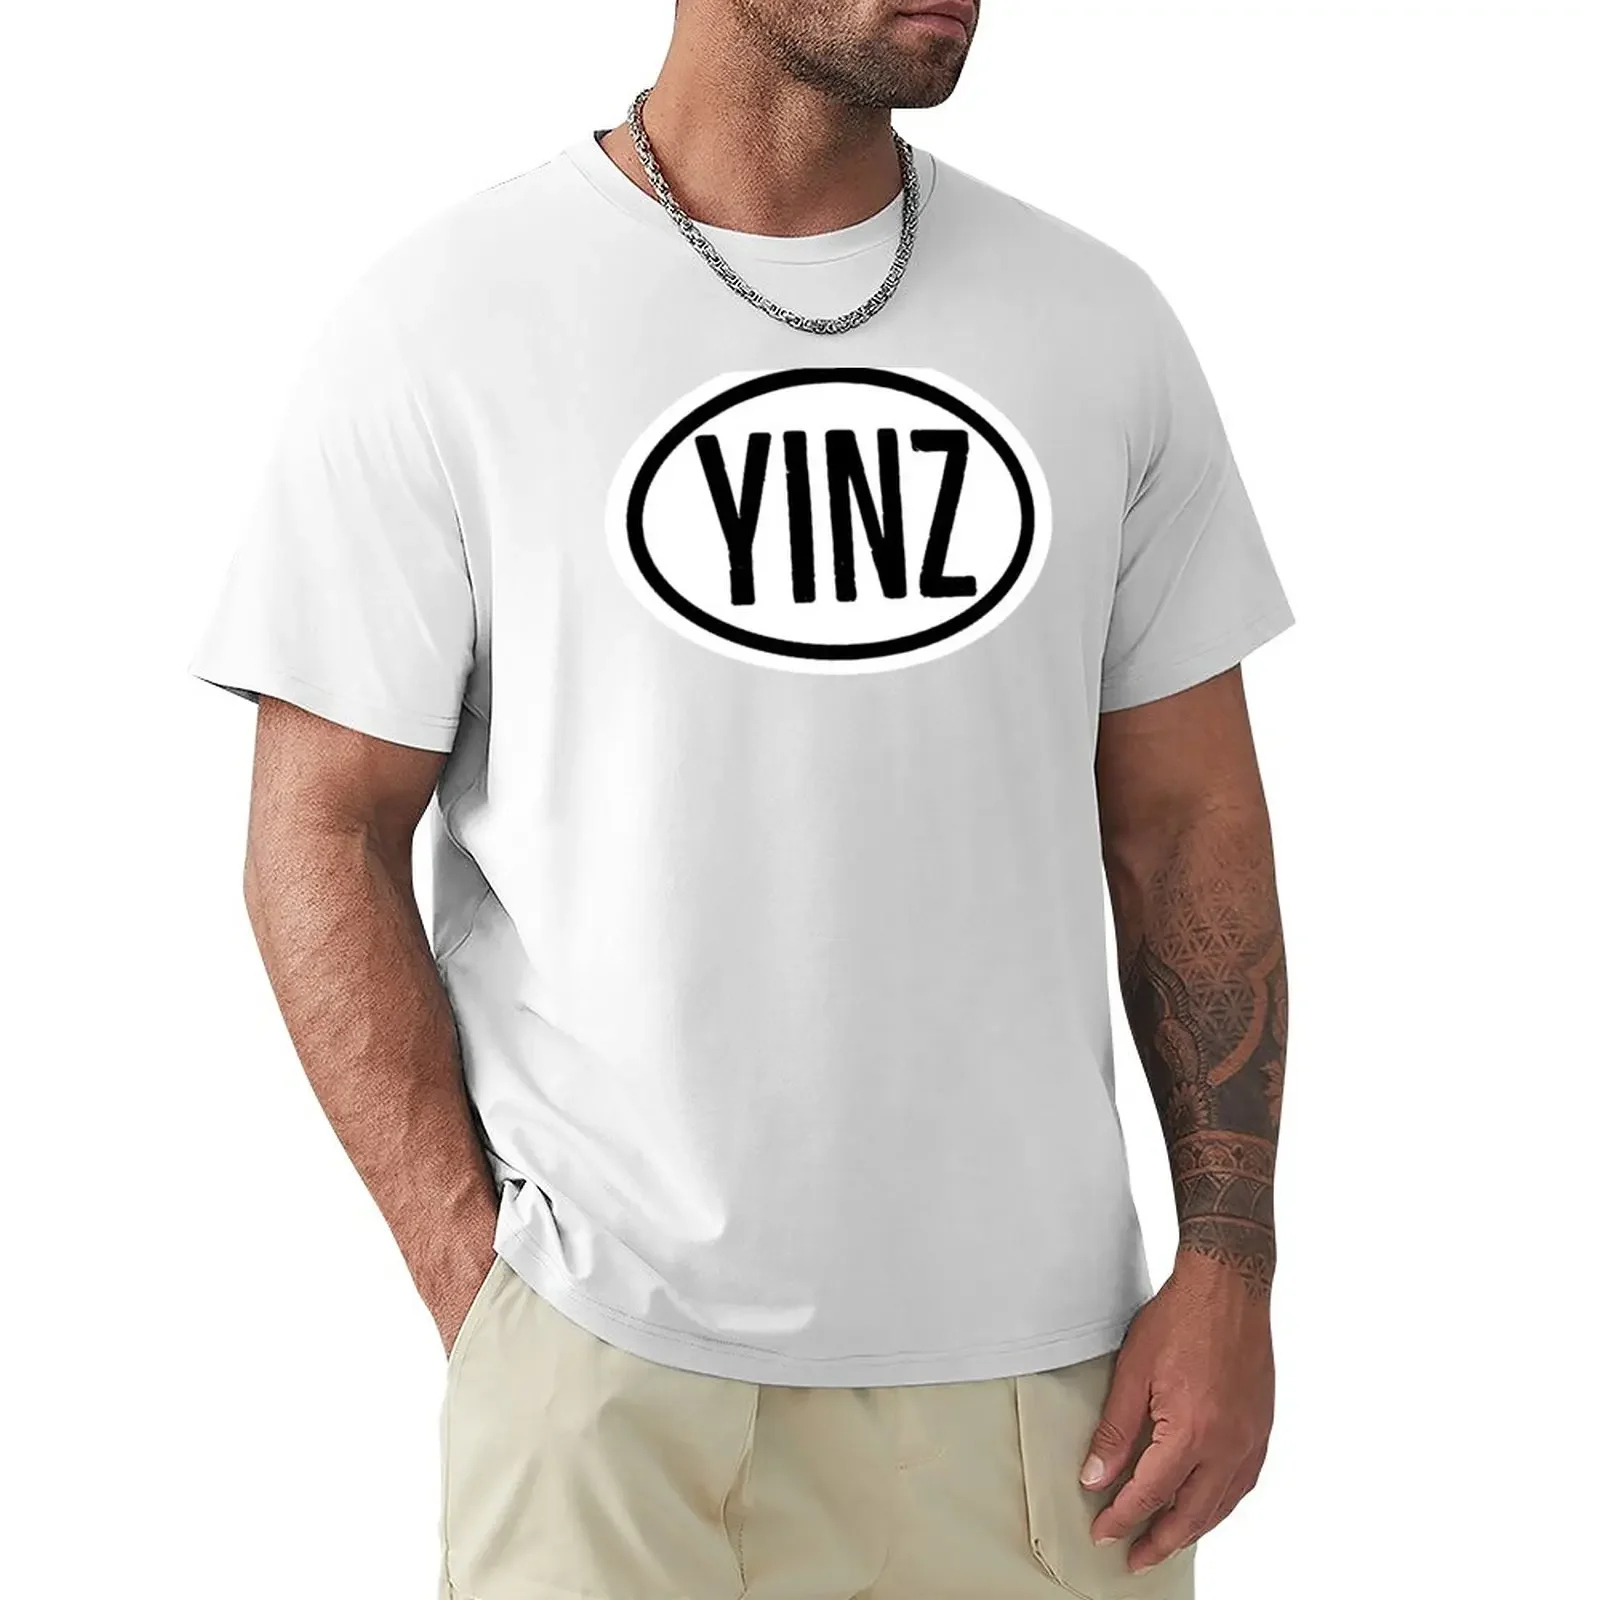 

YINZ Travel Destination Bumper Sticker Design T-Shirt sports fans Short sleeve tee summer top mens clothes